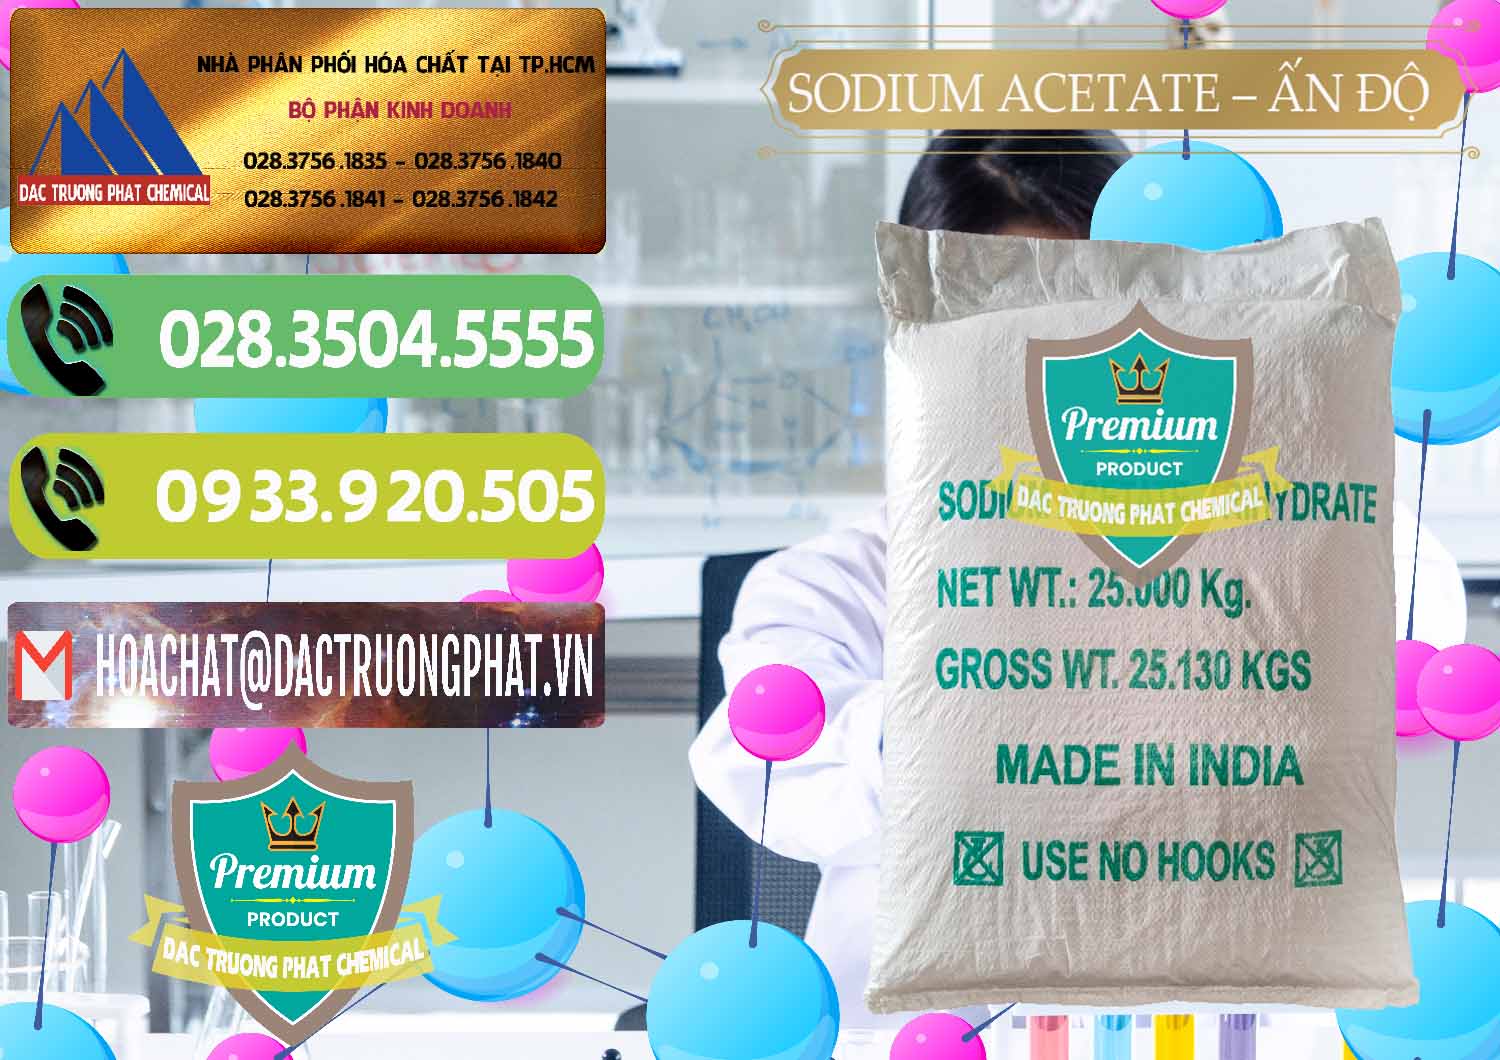 Cty chuyên cung cấp và bán Sodium Acetate - Natri Acetate Ấn Độ India - 0133 - Nơi cung cấp & phân phối hóa chất tại TP.HCM - hoachatmientay.vn